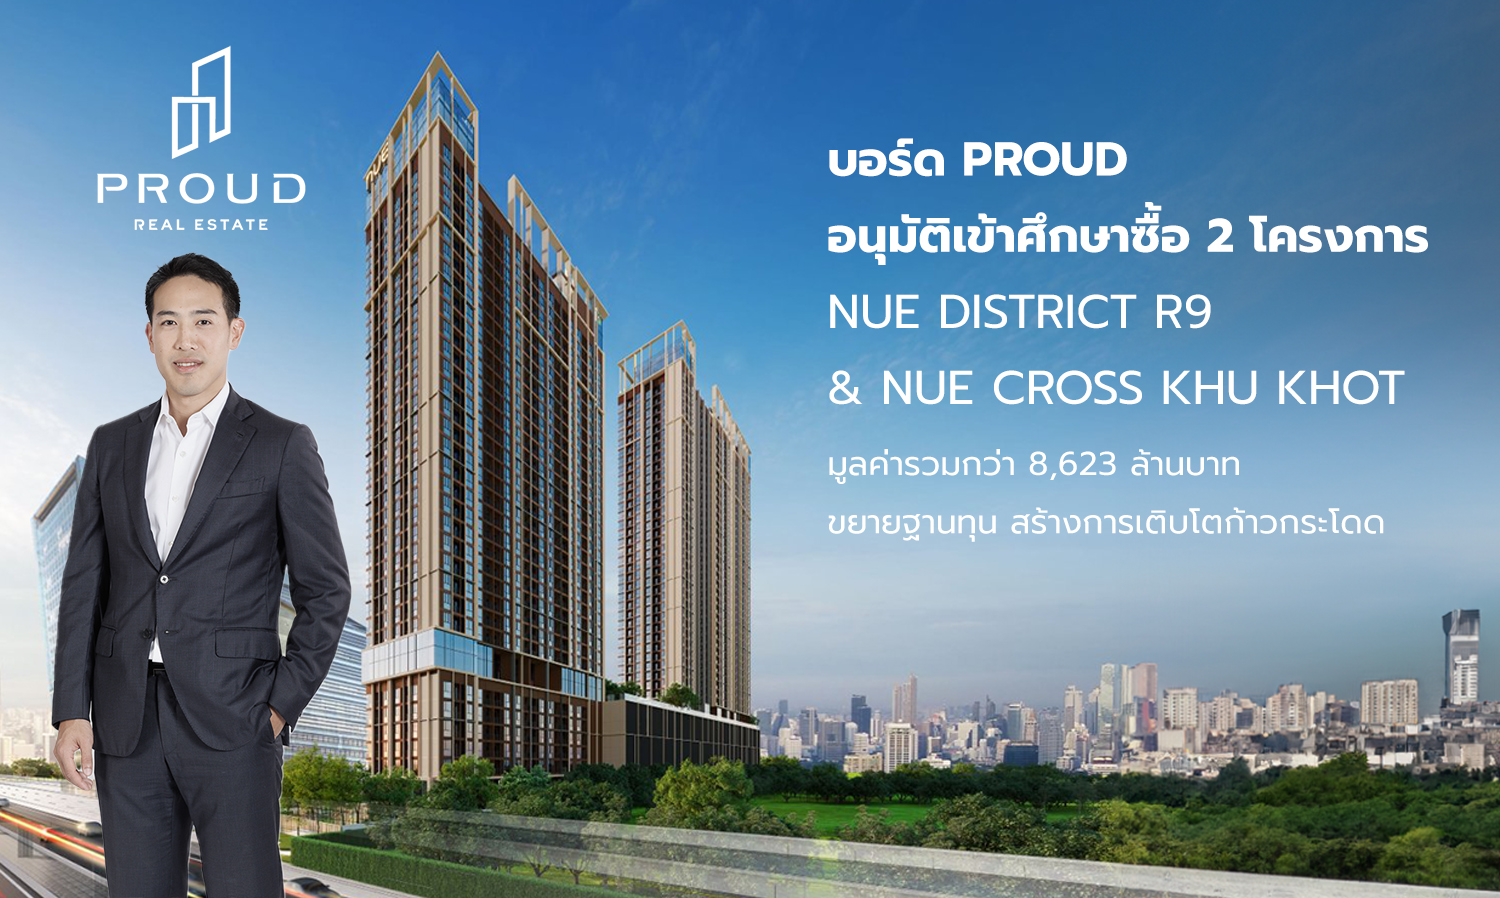 บอร์ด PROUD อนุมัติเข้าศึกษาซื้อ 2 โครงการ NUE District R9 & NUE Cross Khu Khot มูลค่ารวมกว่า 8,623 ล้านบาท ขยายฐานทุน สร้างการเติบโตก้าวกระโดด